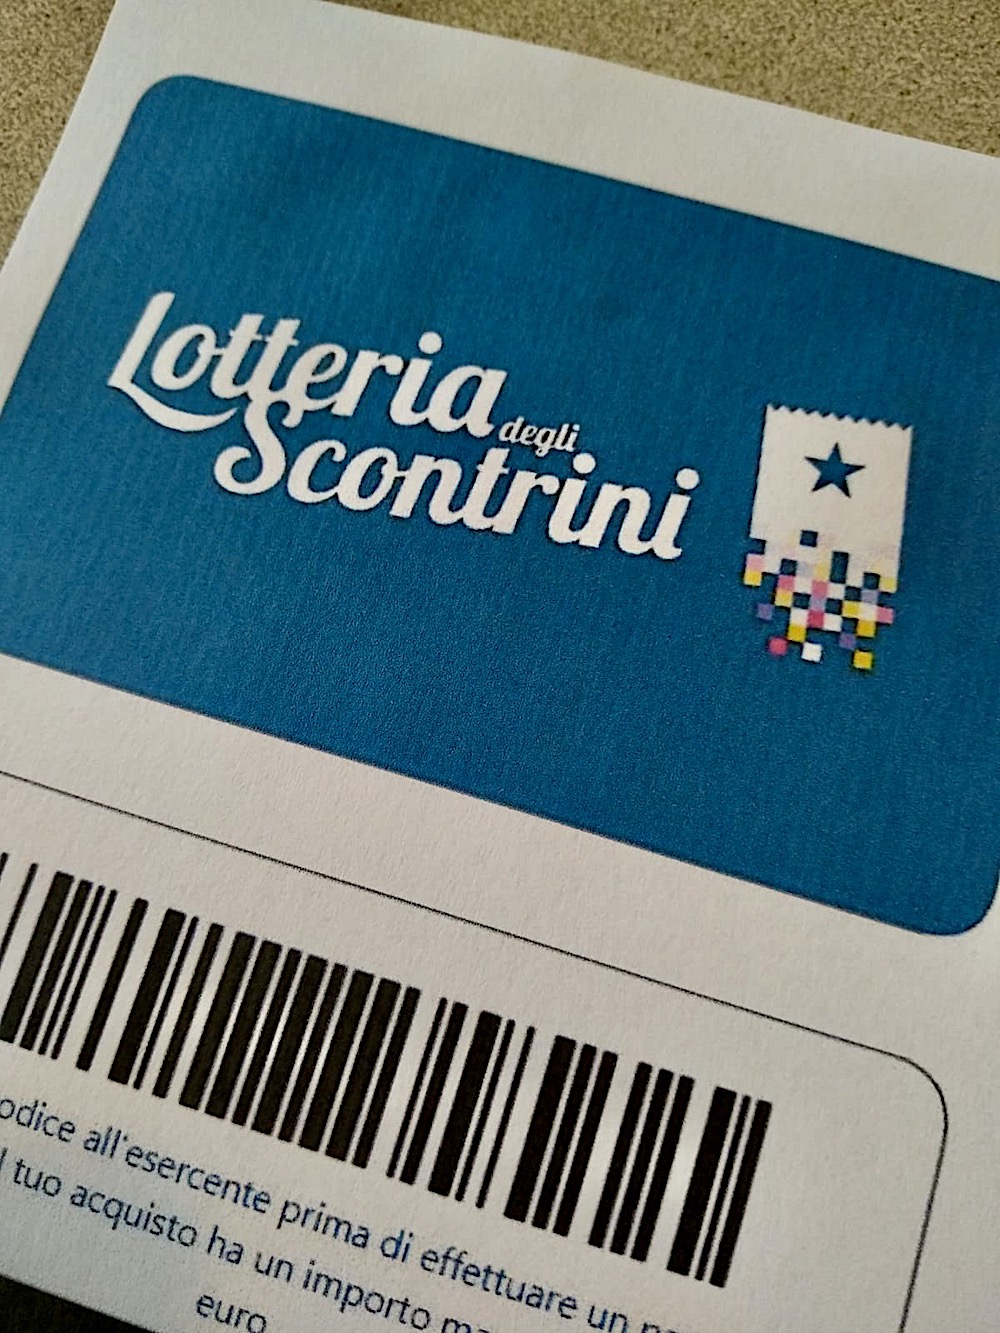 Lotteria degli scontrini - logo (foto Antonello Serino)